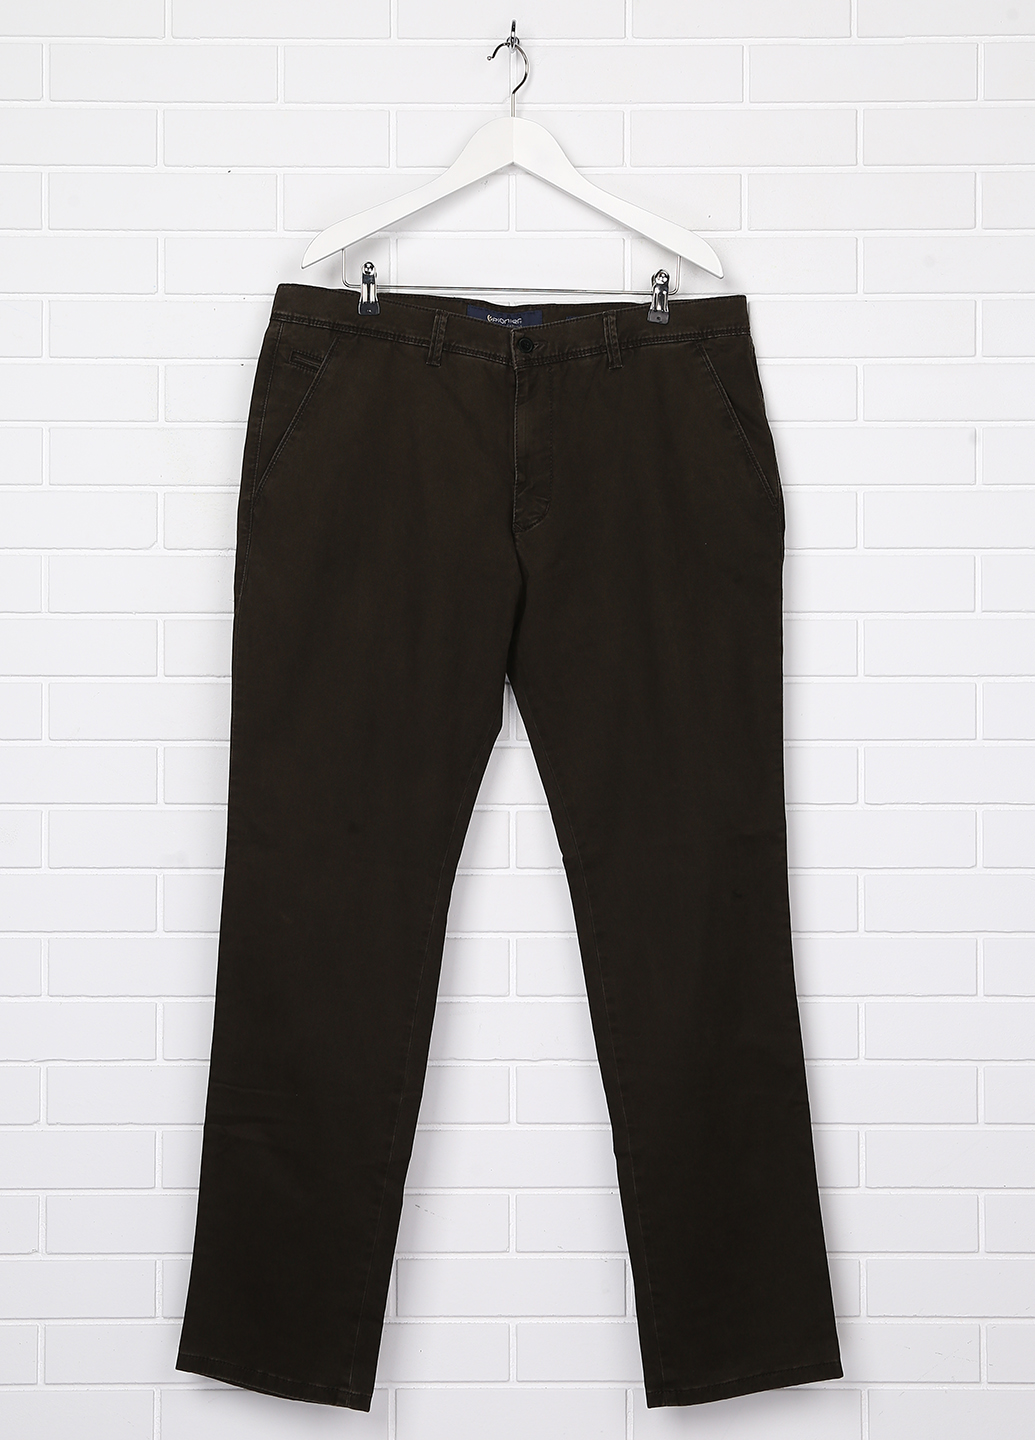 Чоловічі штани-поло Pioneer 41/34 Темно-коричневий (2900054930019)